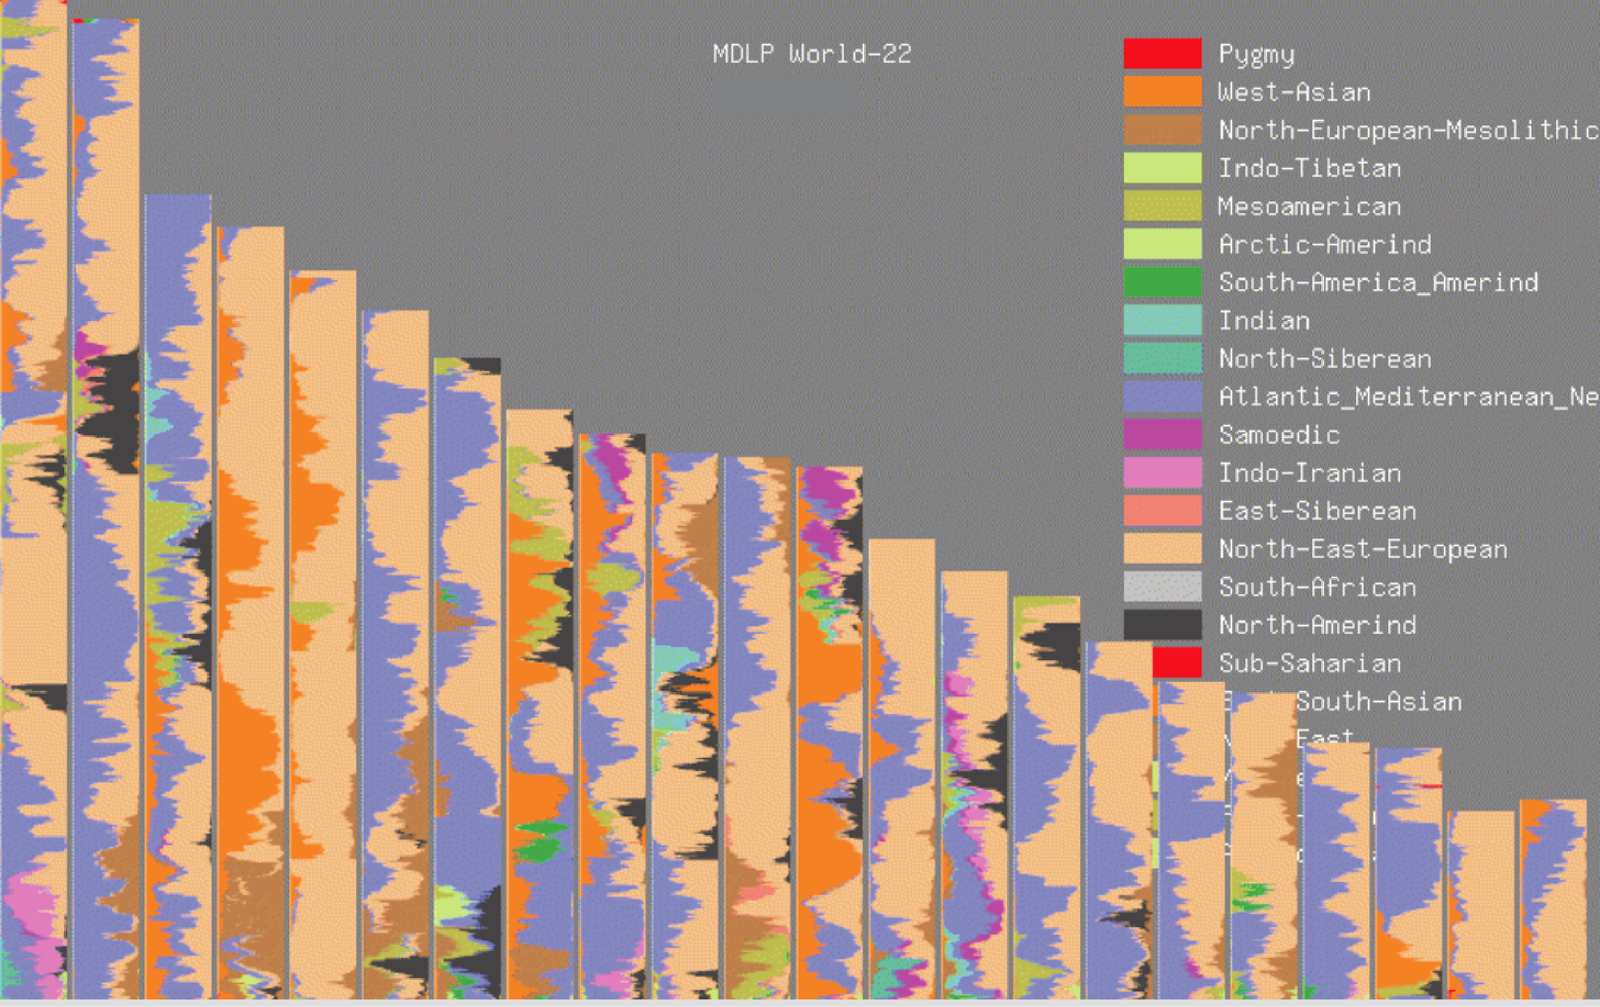 Résultats de l'adjuvant GEDmatch MDLP World-22 affichés sous forme de peinture chromosomique.